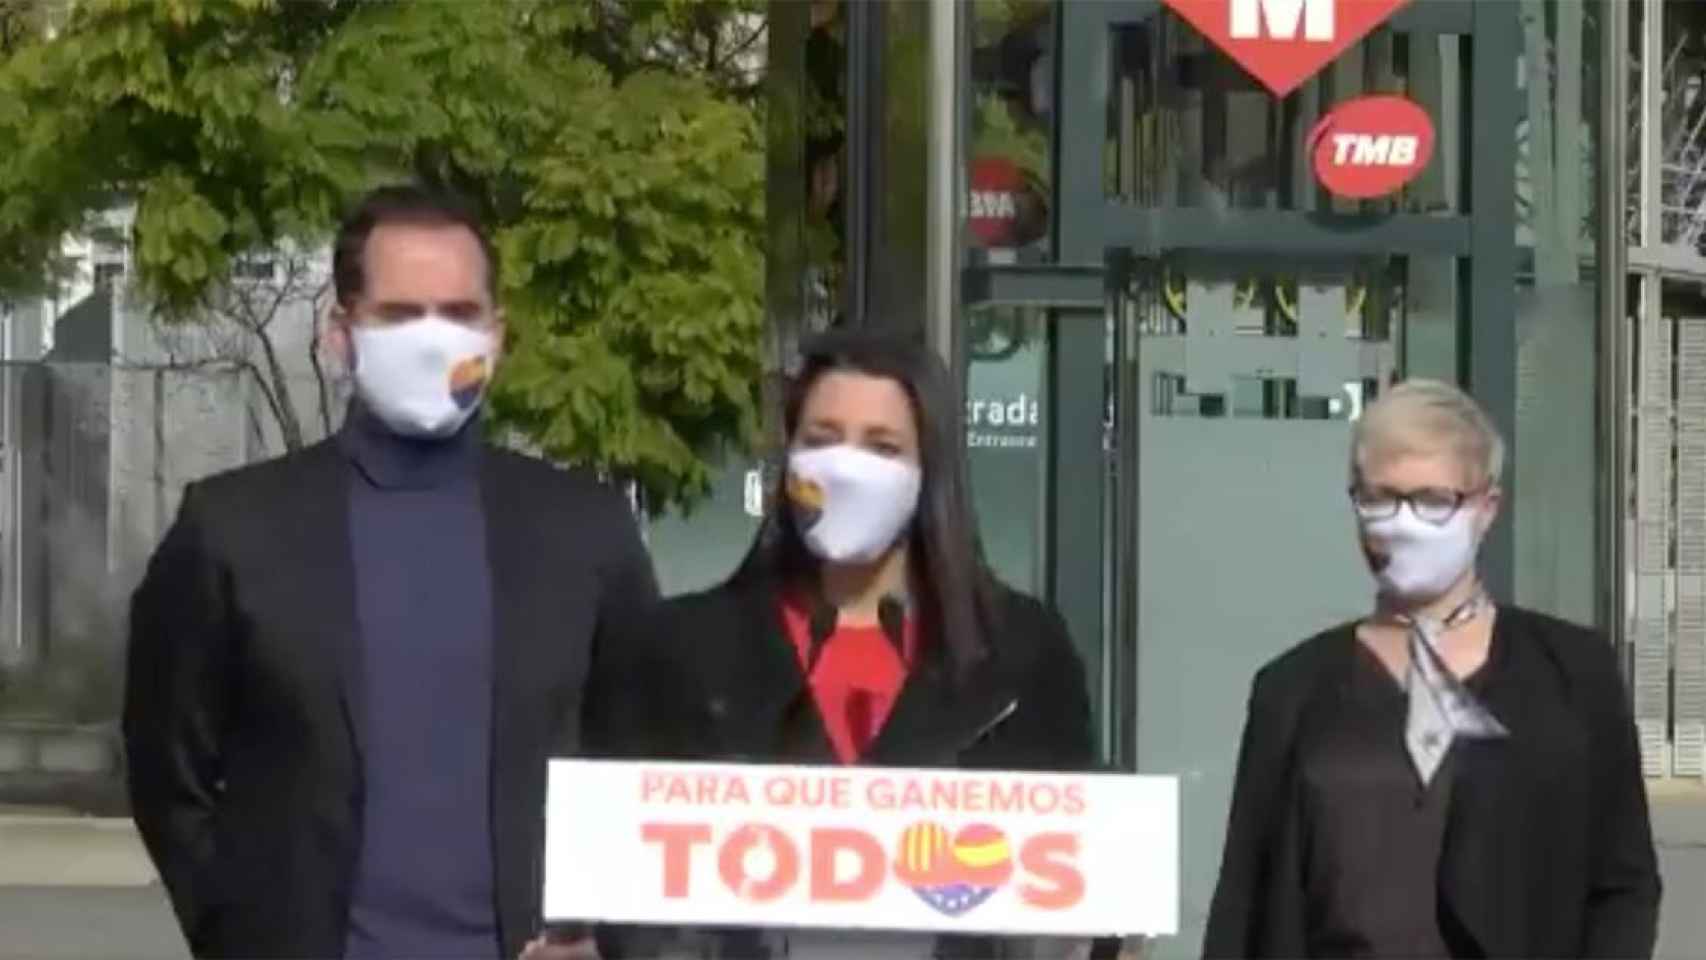 La presidenta de Cs, Inés Arrimadas (C); la número 2 de Cs por Barcelona, Anna Grau, y el vicepresidente de la Comunidad de Madrid, Ignacio Aguado